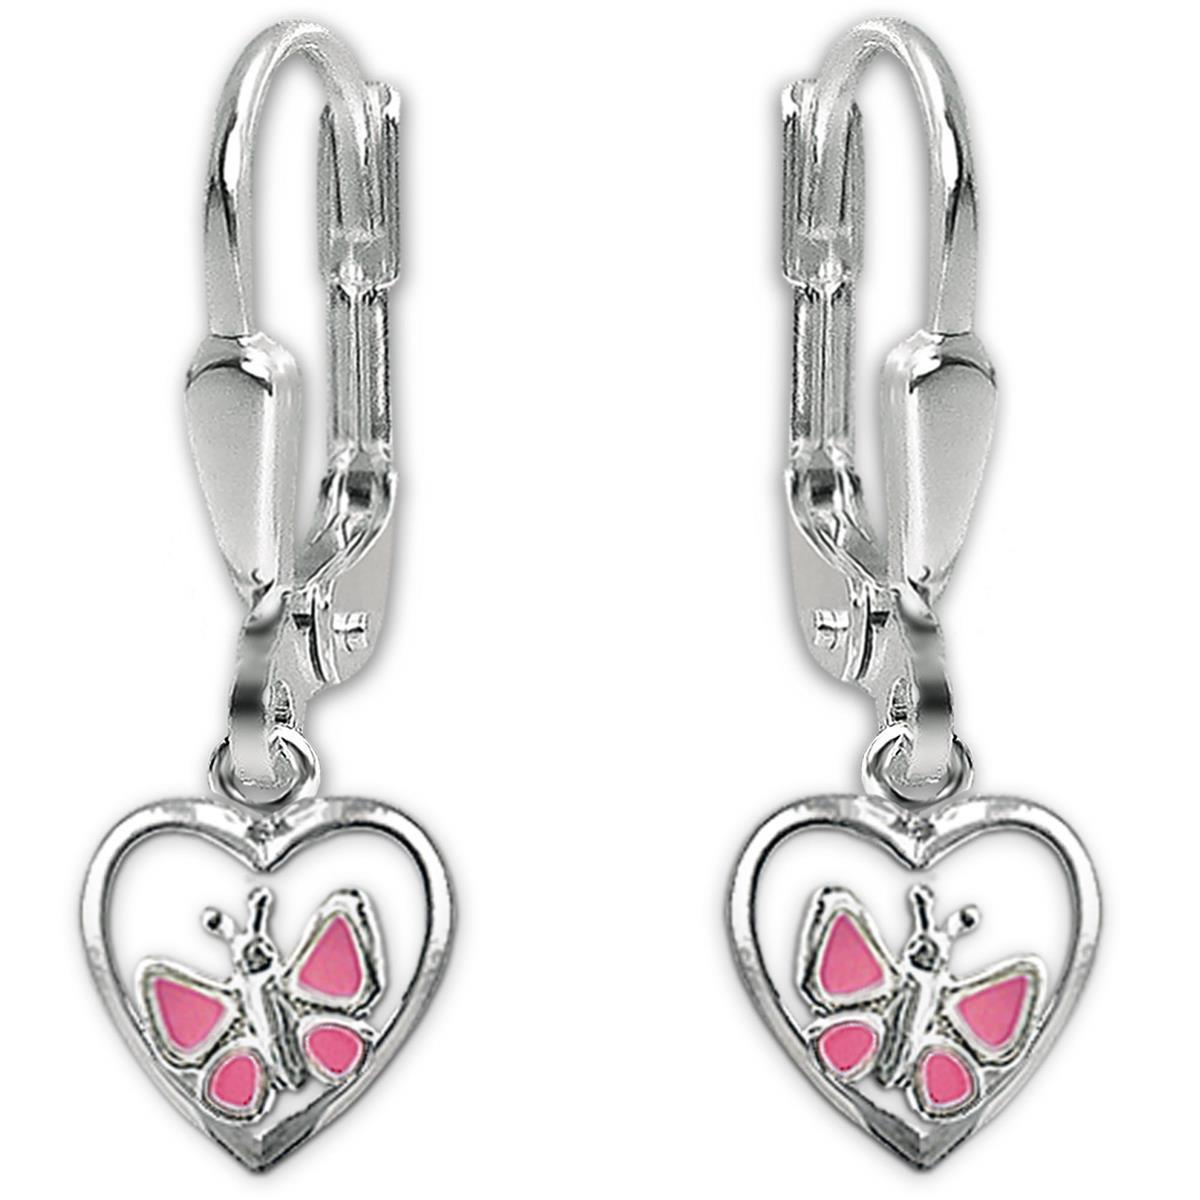 Silberne Ohrhänger 22 mm Schmetterling rosa lackiert und seitlich im Herz STERLING SILBER 925